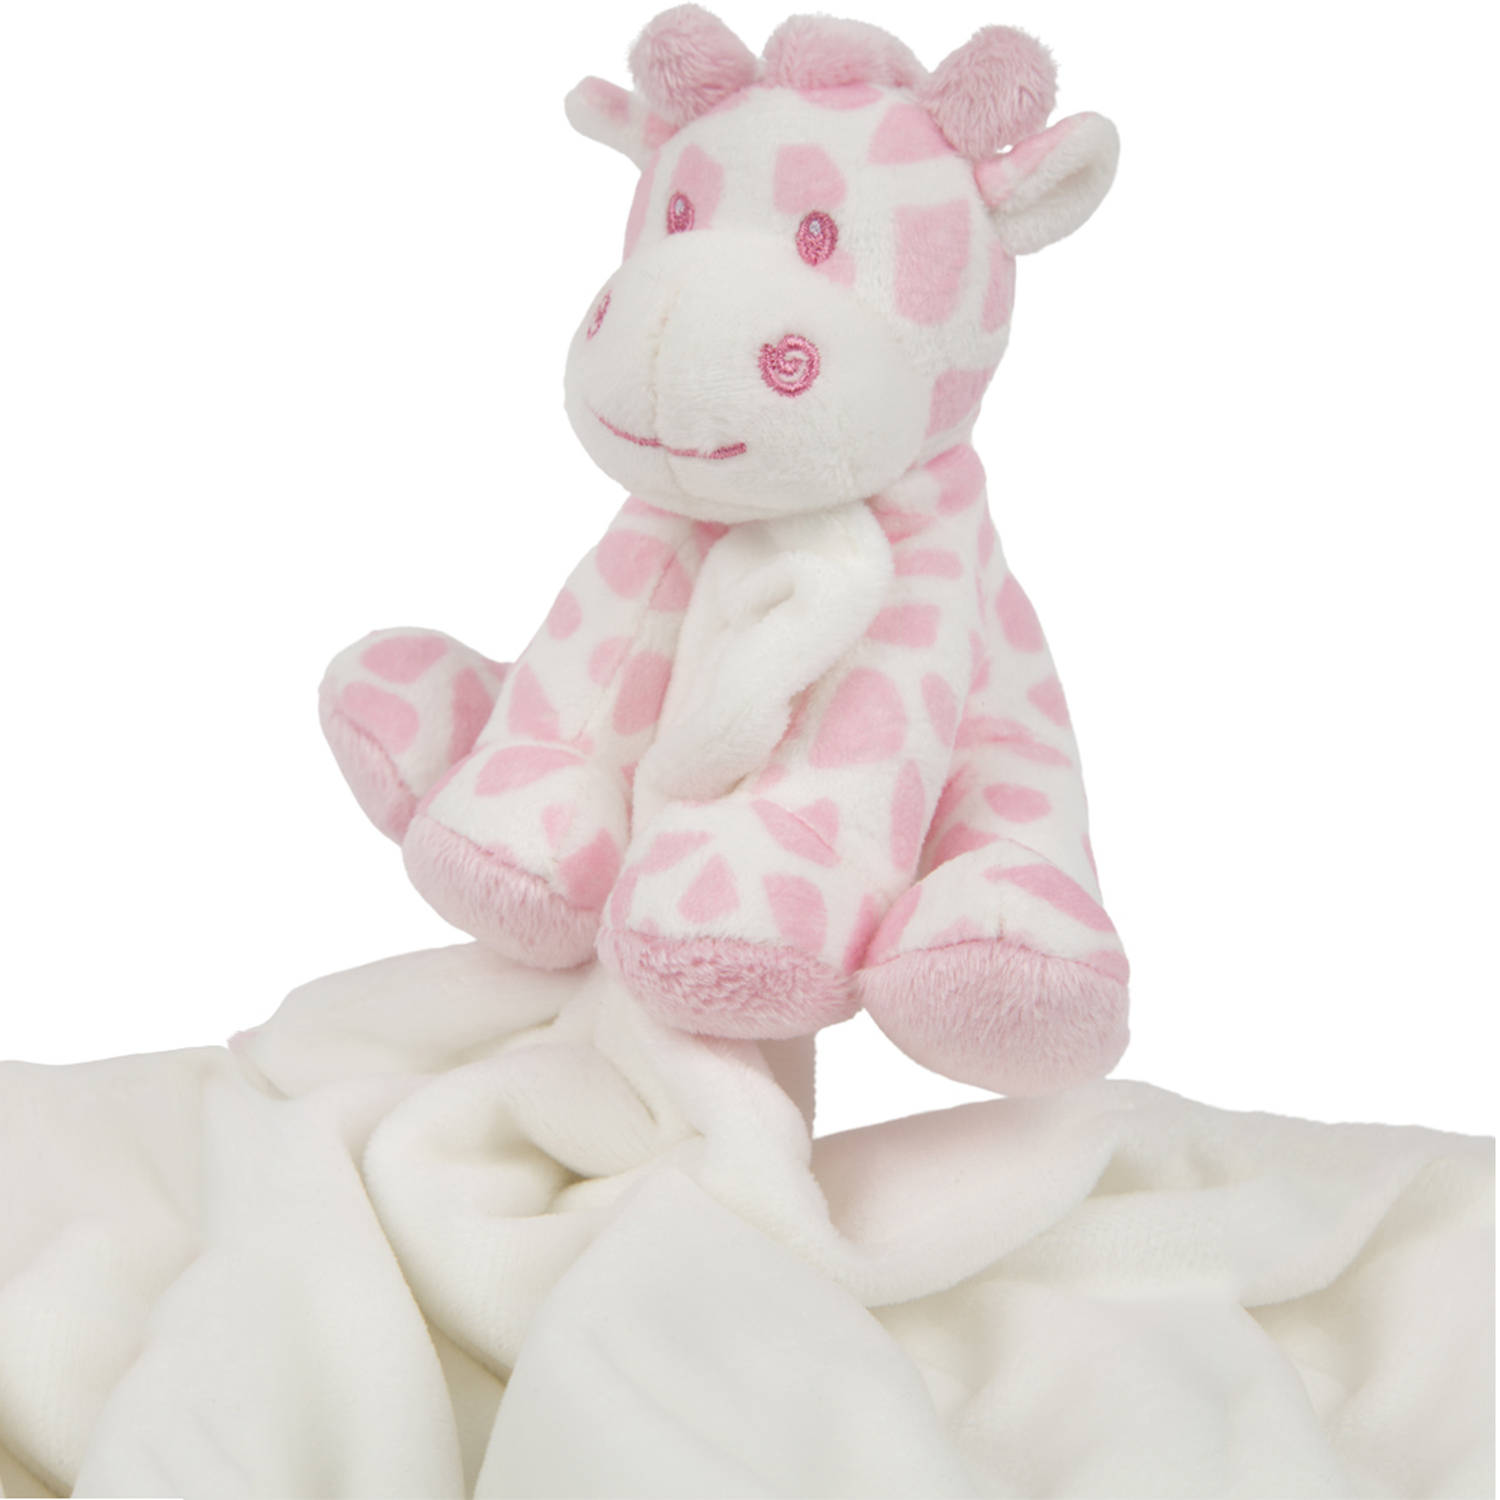 Suki Gifts pluche gevlekte giraffe knuffeldier - tuttel doekje - roze/wit - 30 cm - Hoge kwaliteit knuffels